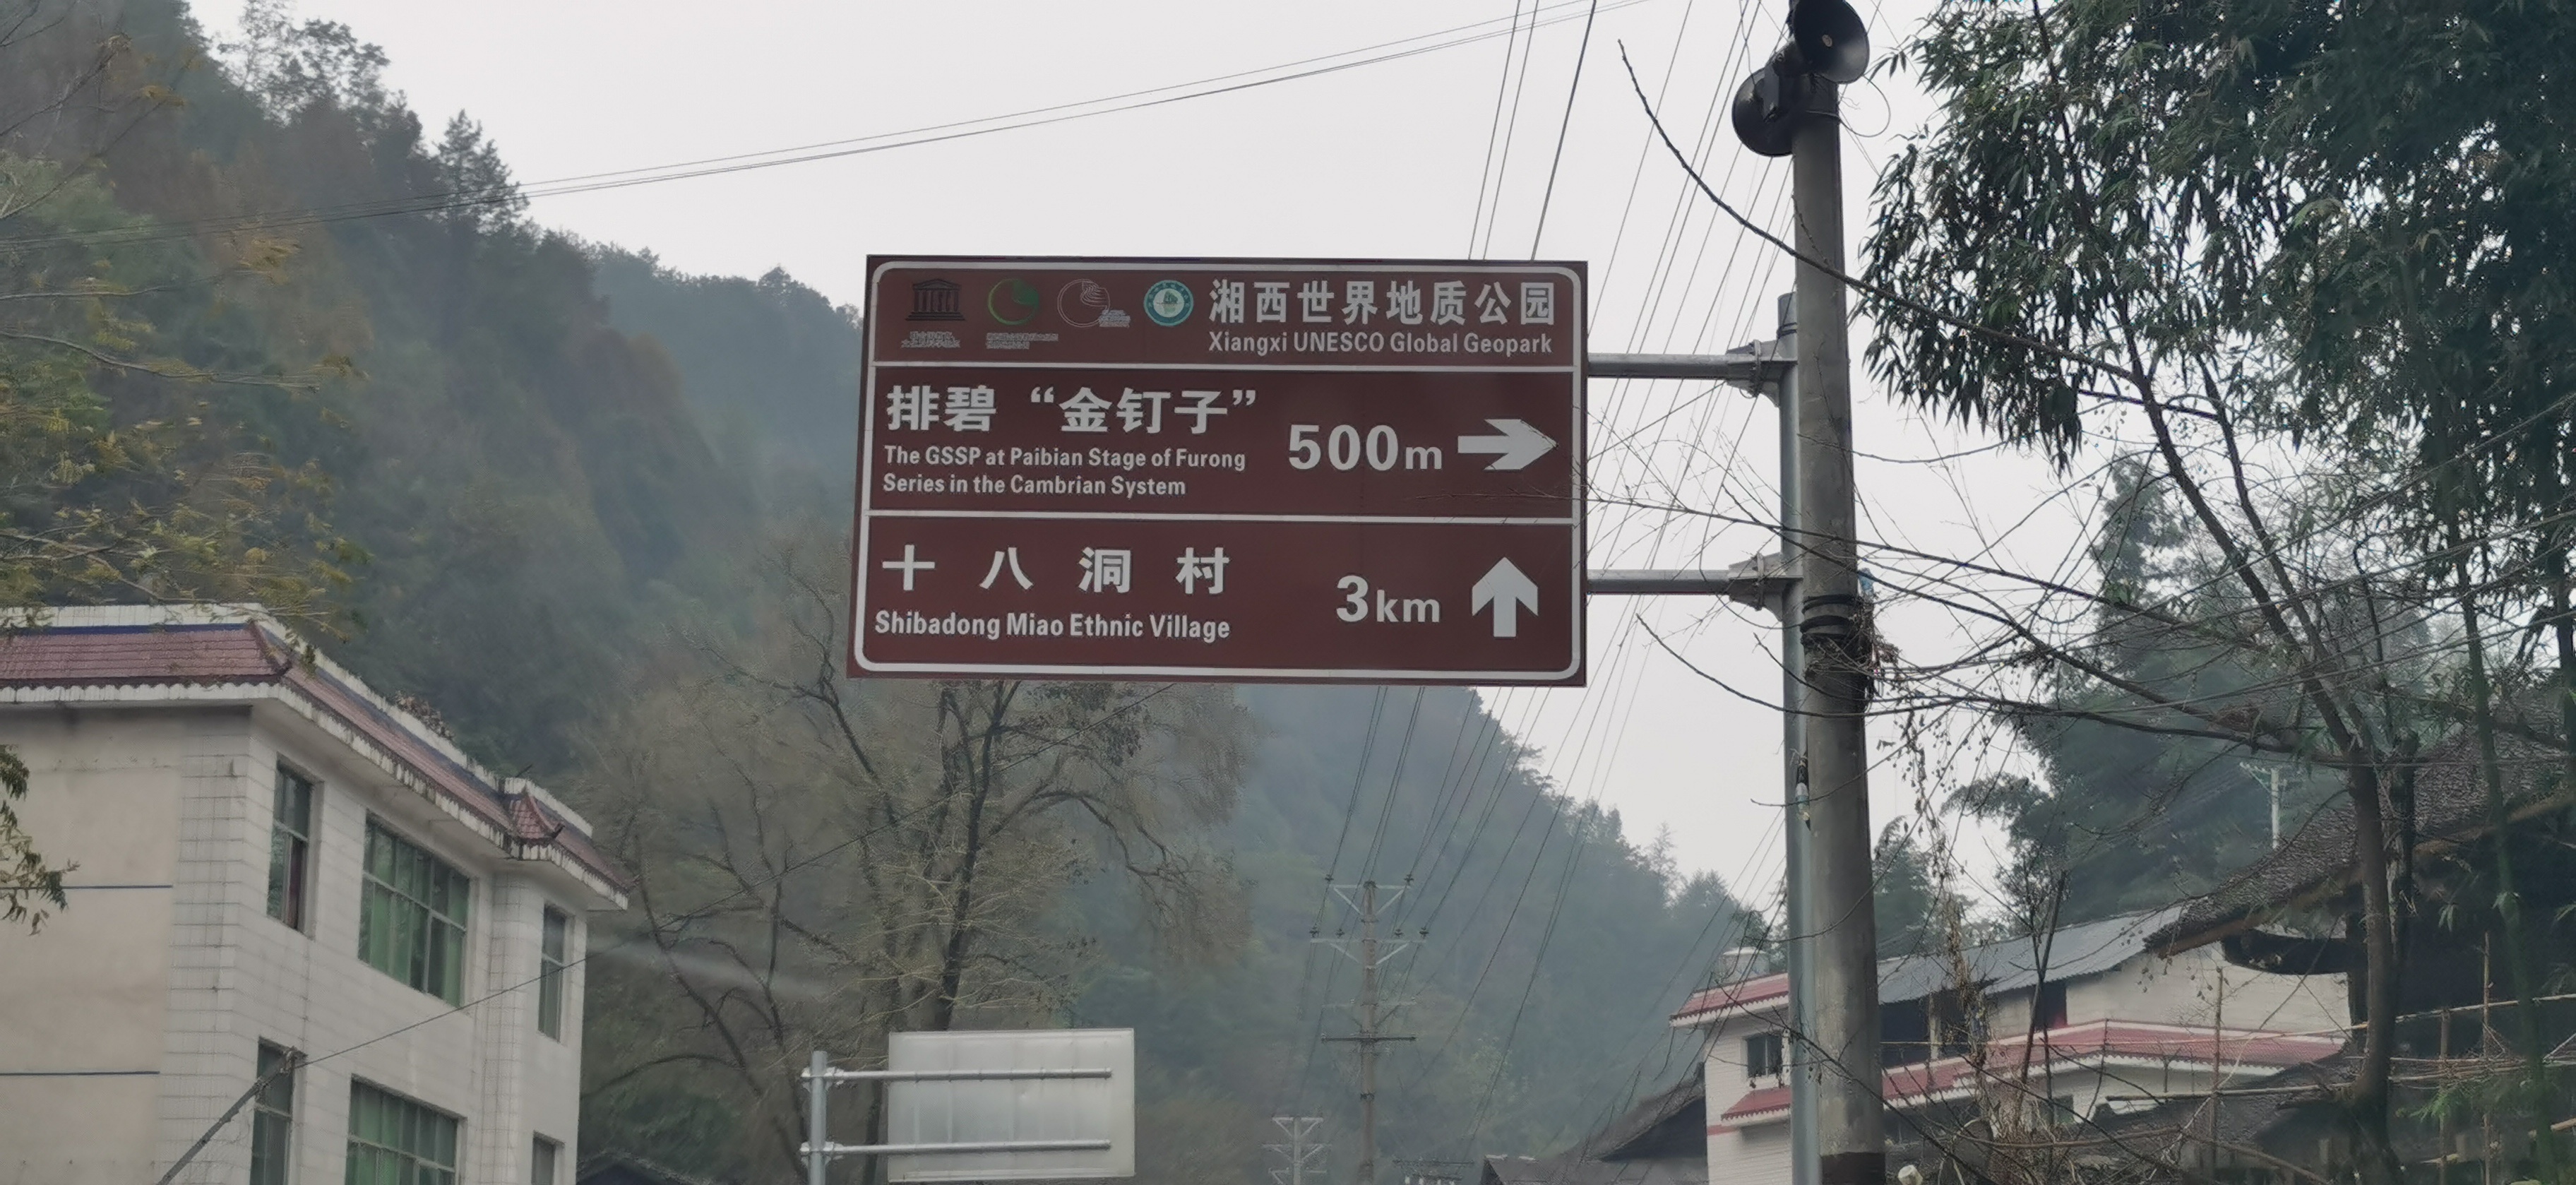 十八洞村之旅-2020游湘西十八洞村